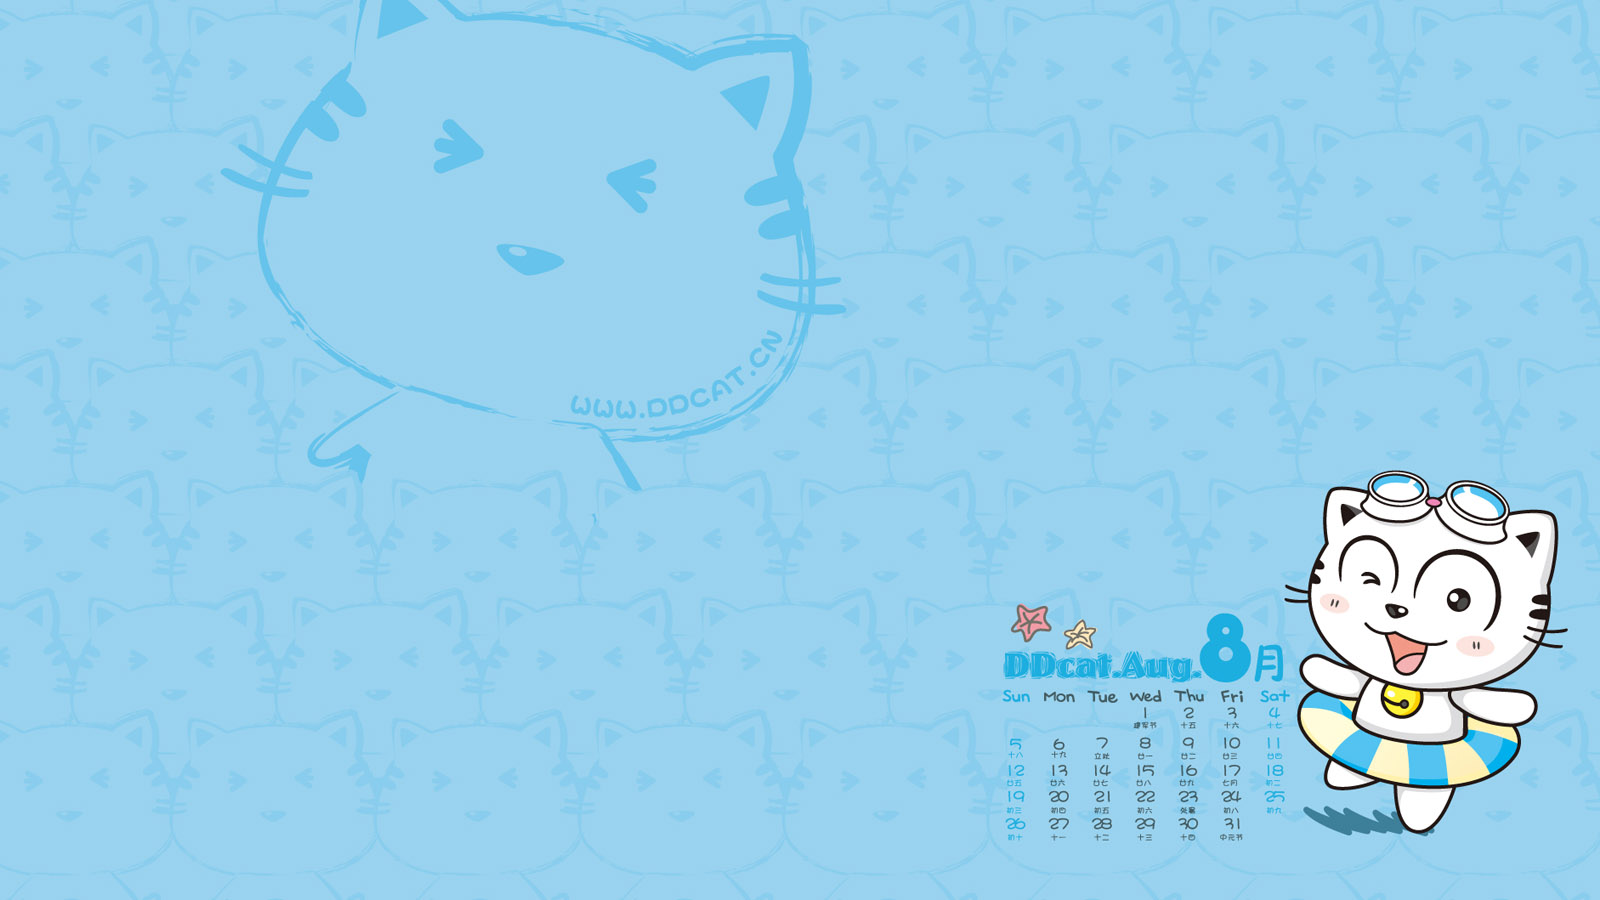 Ding Dong cat August 2012 calendar wallpaper